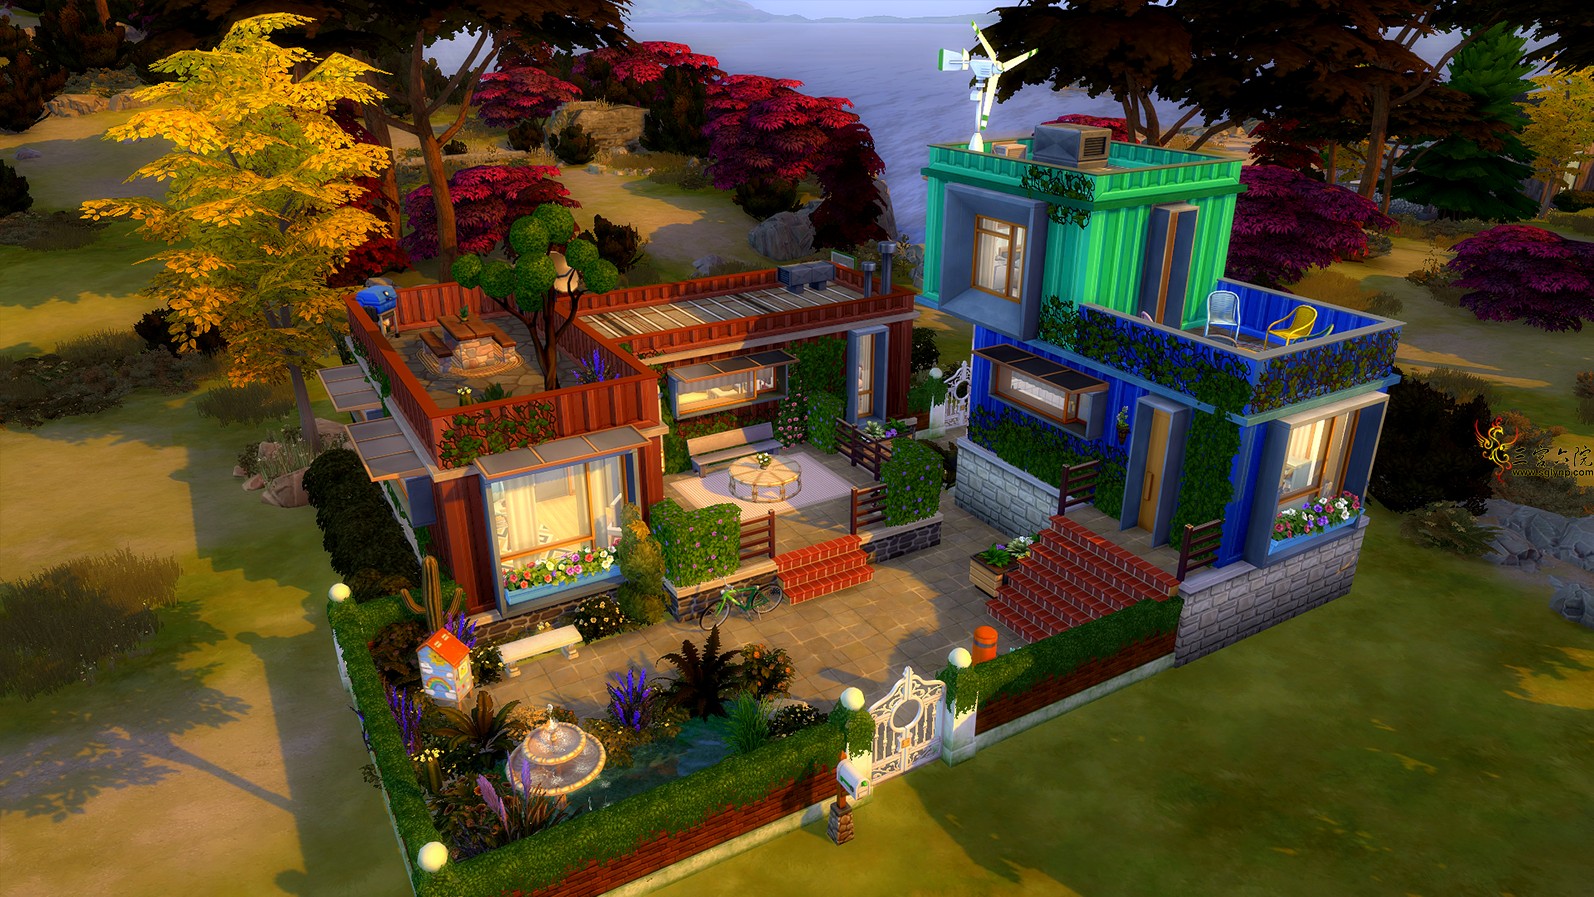 Sims 4 Screenshot 2021.01.11 - 19.51.50.33.png